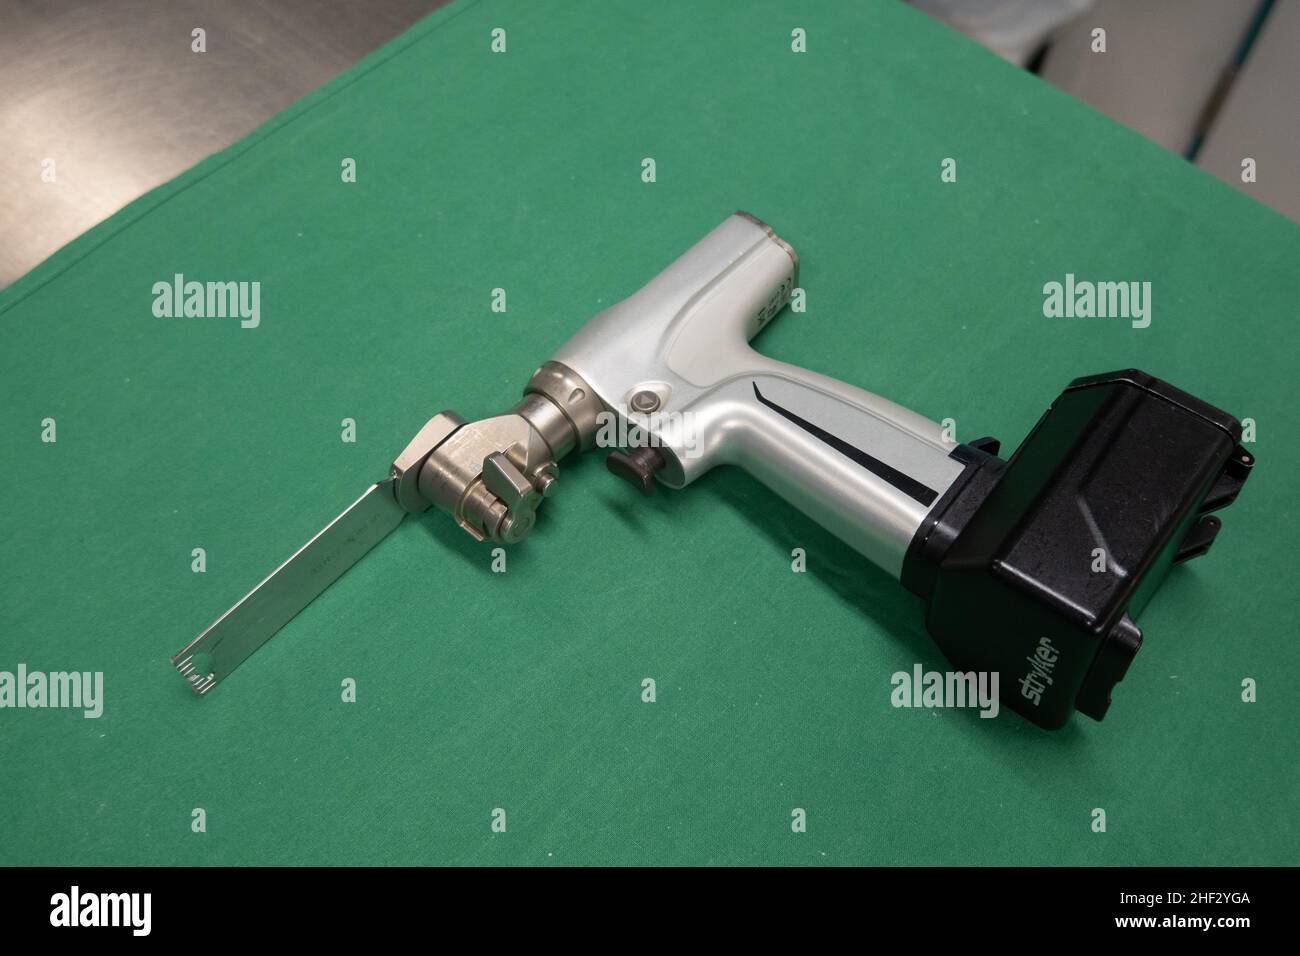 Batteriebetriebene chirurgische Schwingsäge mit Sägeblatt liegt auf einem  grünen OP-Tuch Stockfotografie - Alamy